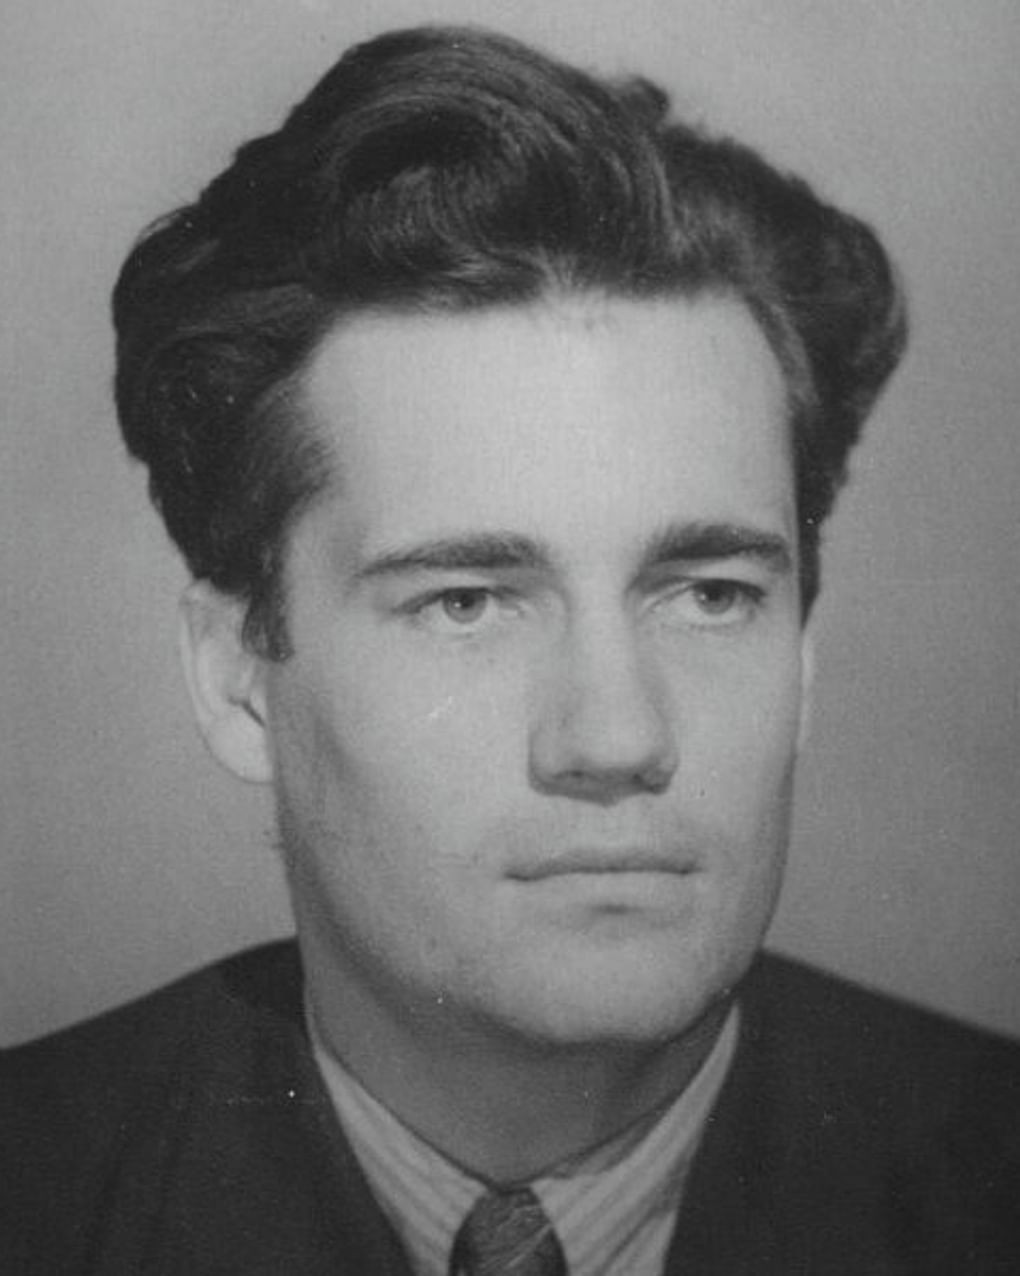 Эльдар Рязанов в молодости. 1950-е годы. Фотография: Киноклуб-музей «Эльдар», Москва